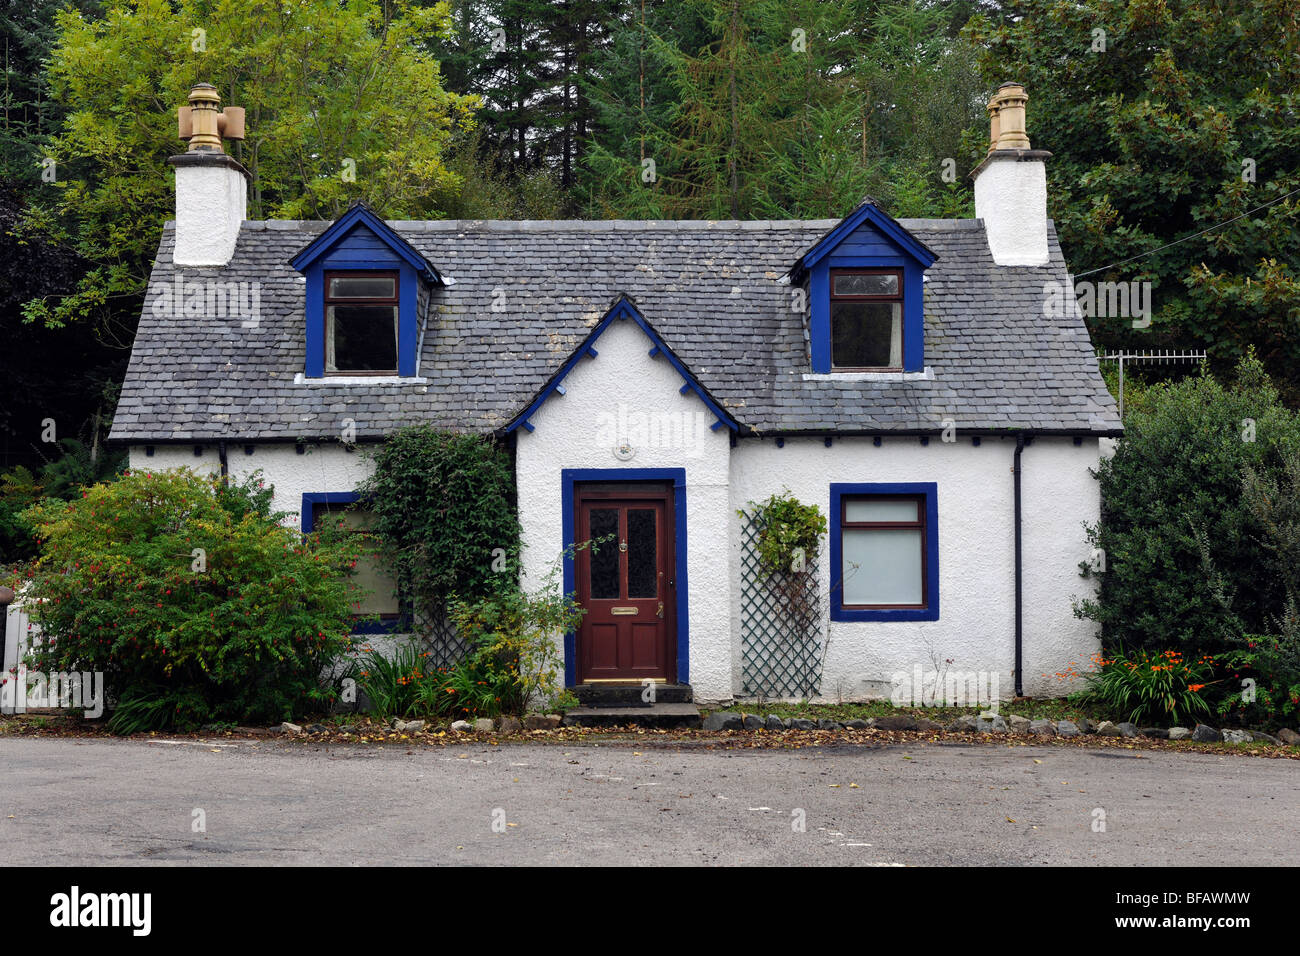 Típica casa rural Highlands de Escocia, Escocia, Reino Unido. Foto de stock